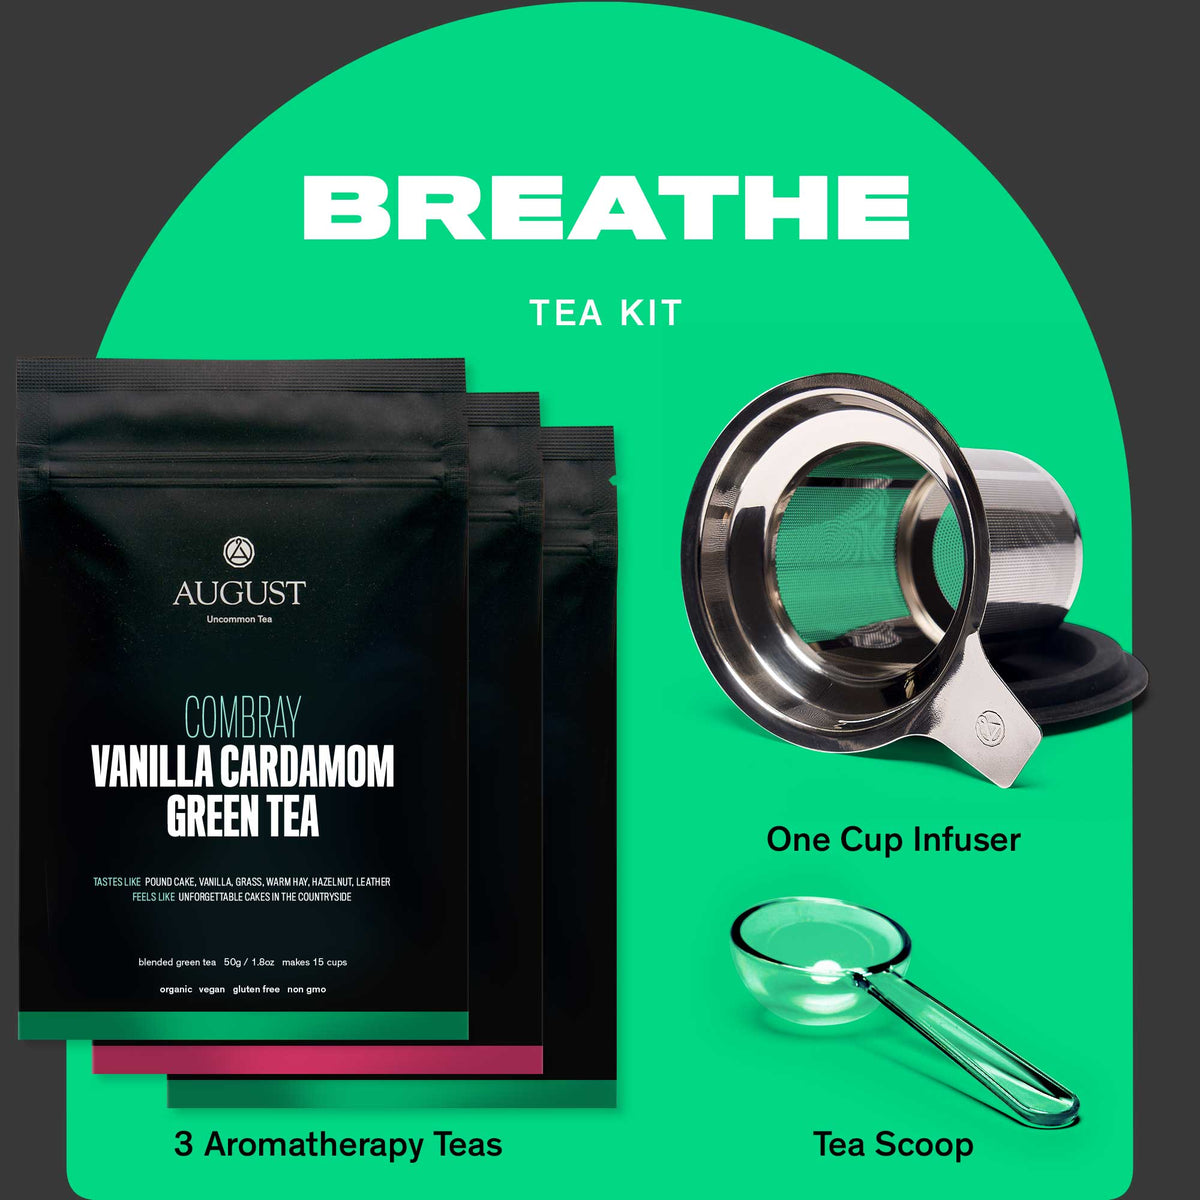 Breathe Tea Kit: 3 Aromatherapy Teas to Lift Your Mood